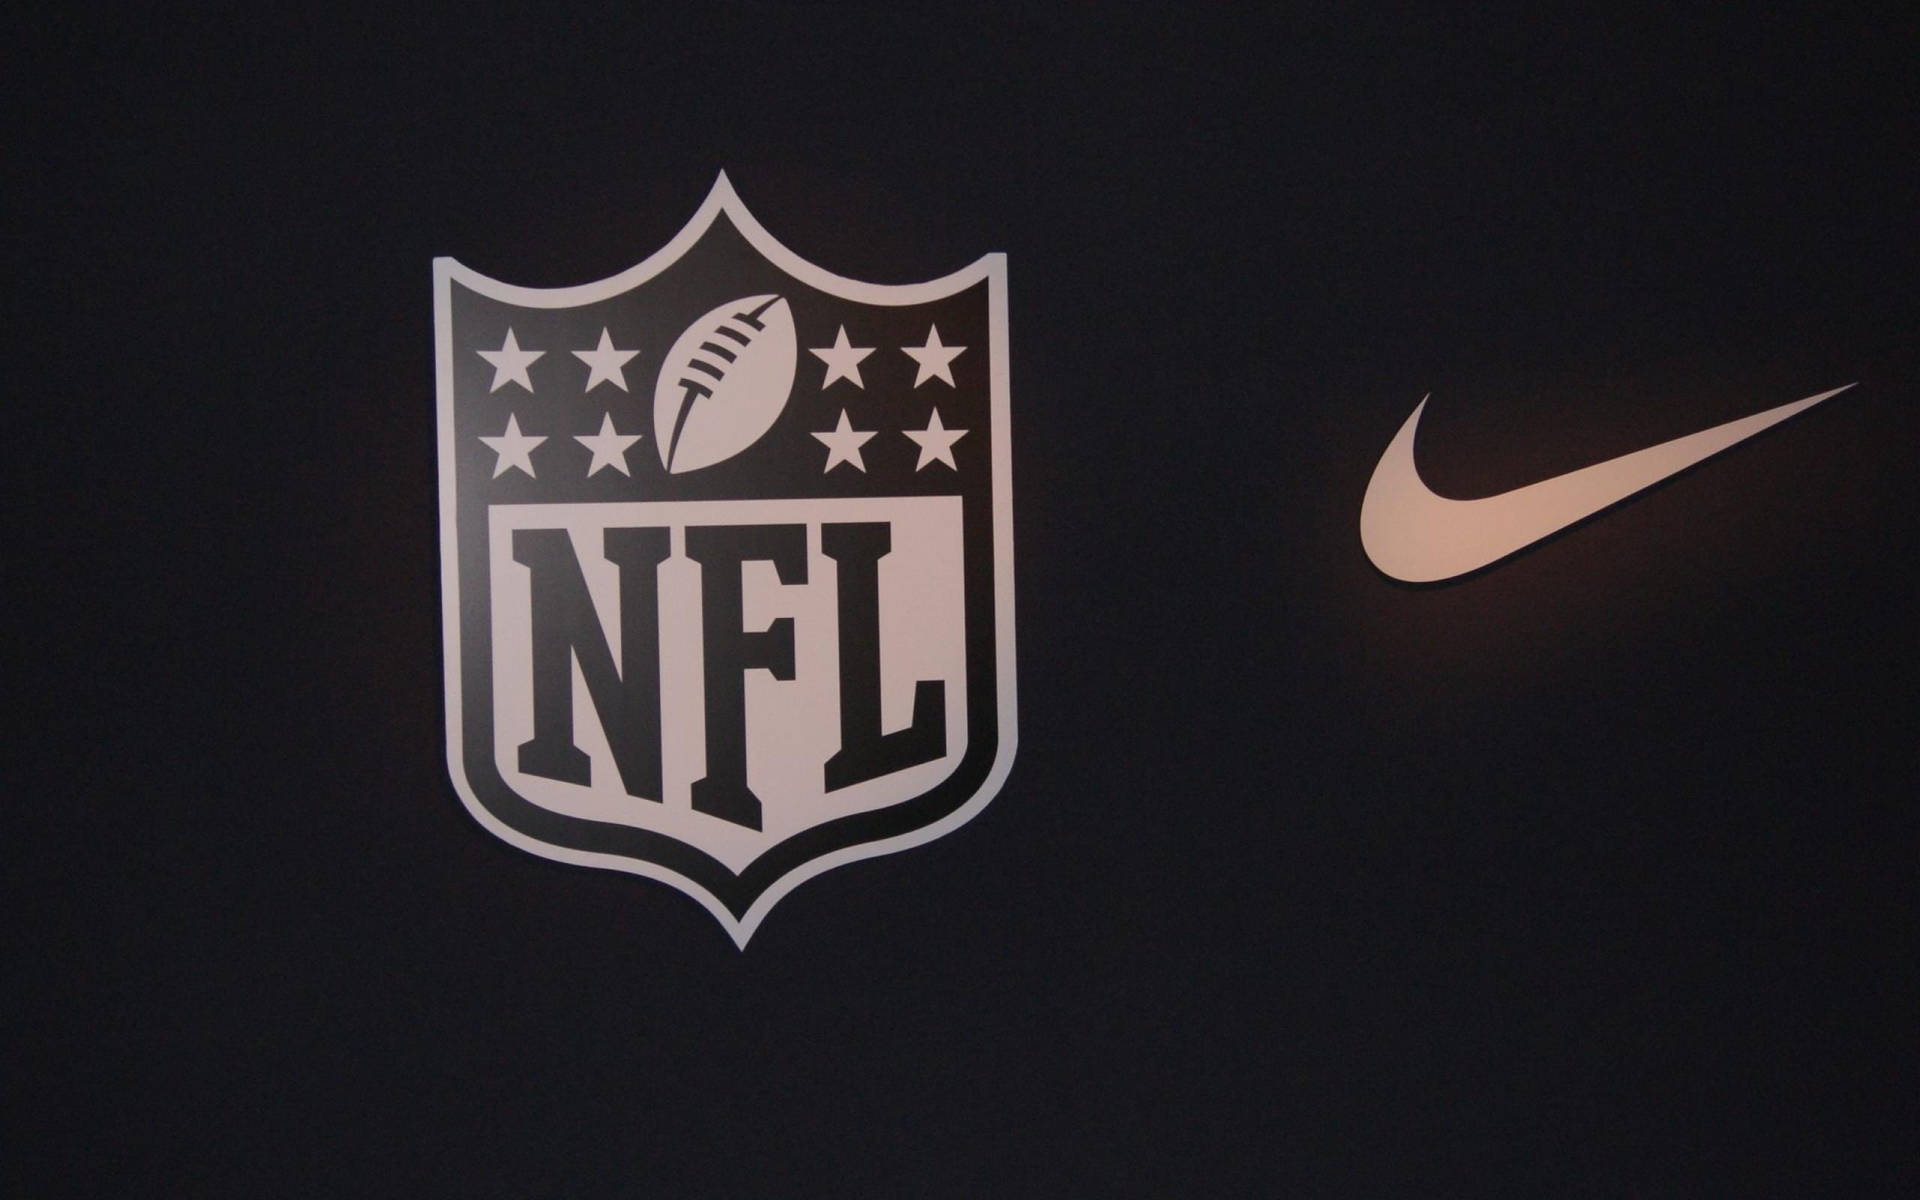 Nike X NFL iPhone baggrund: Præsentere et tydeligt og sjovt udtryk for din ånd. Wallpaper